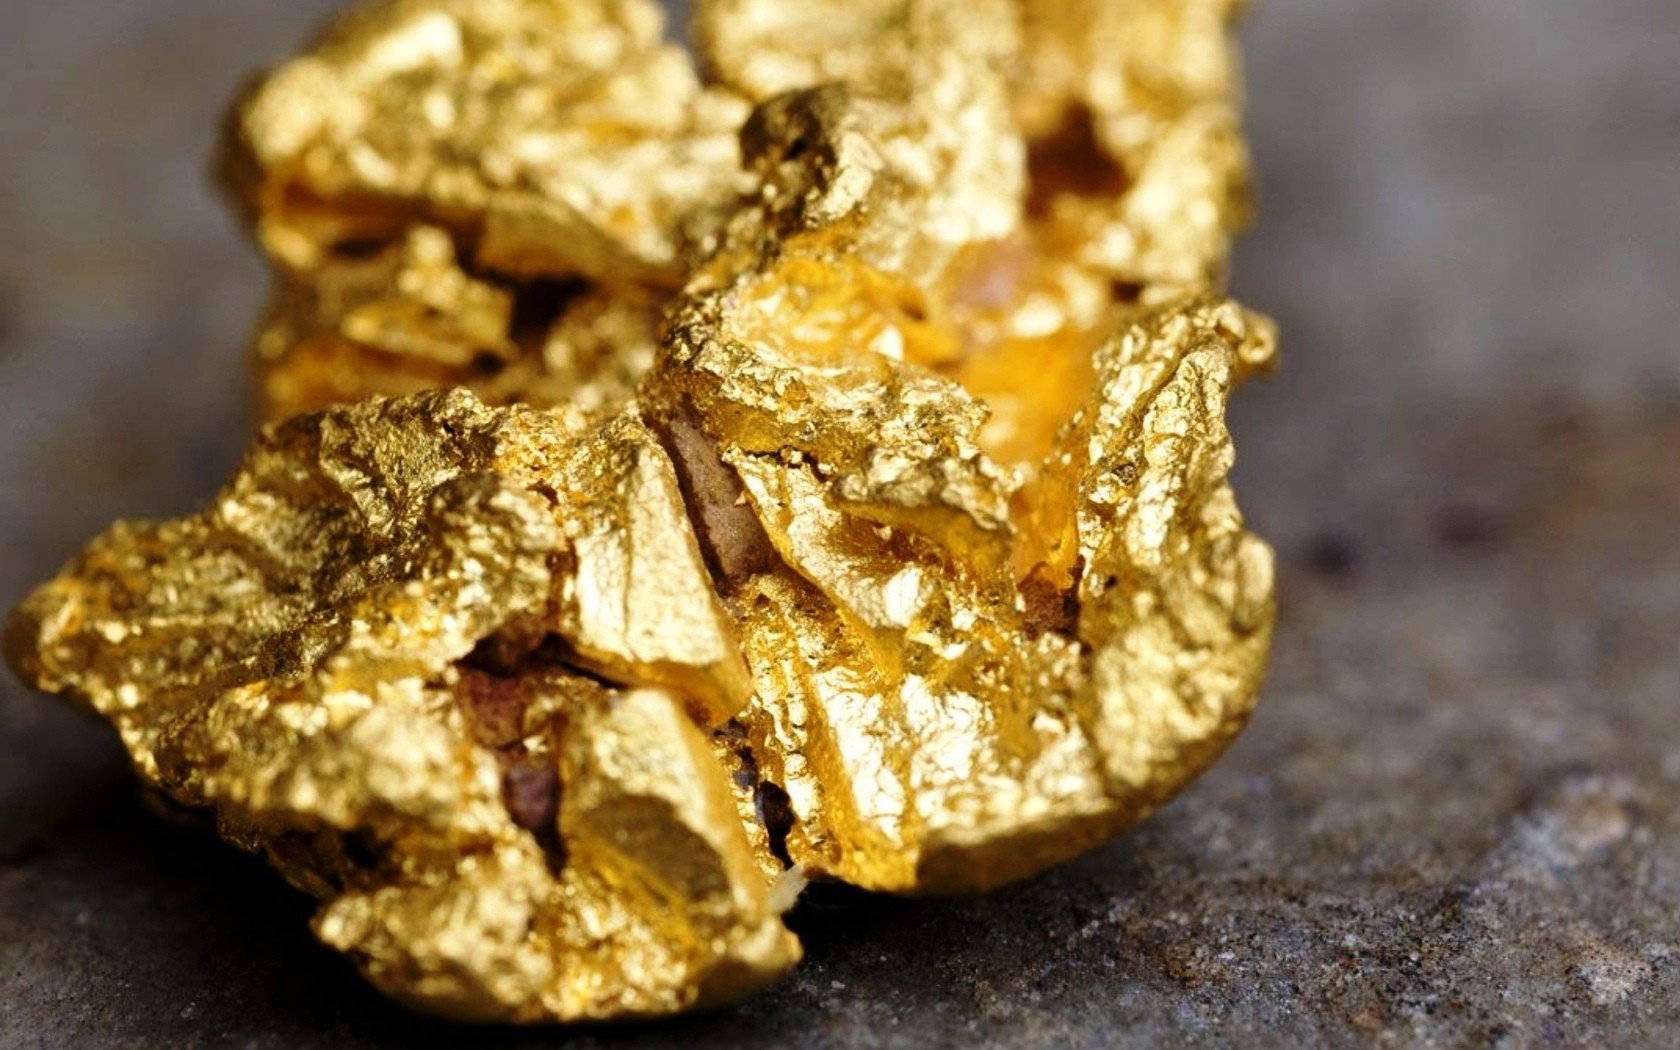 СК: В результате разбойного нападения украдено 36 кг золота и крупная сумма денег 